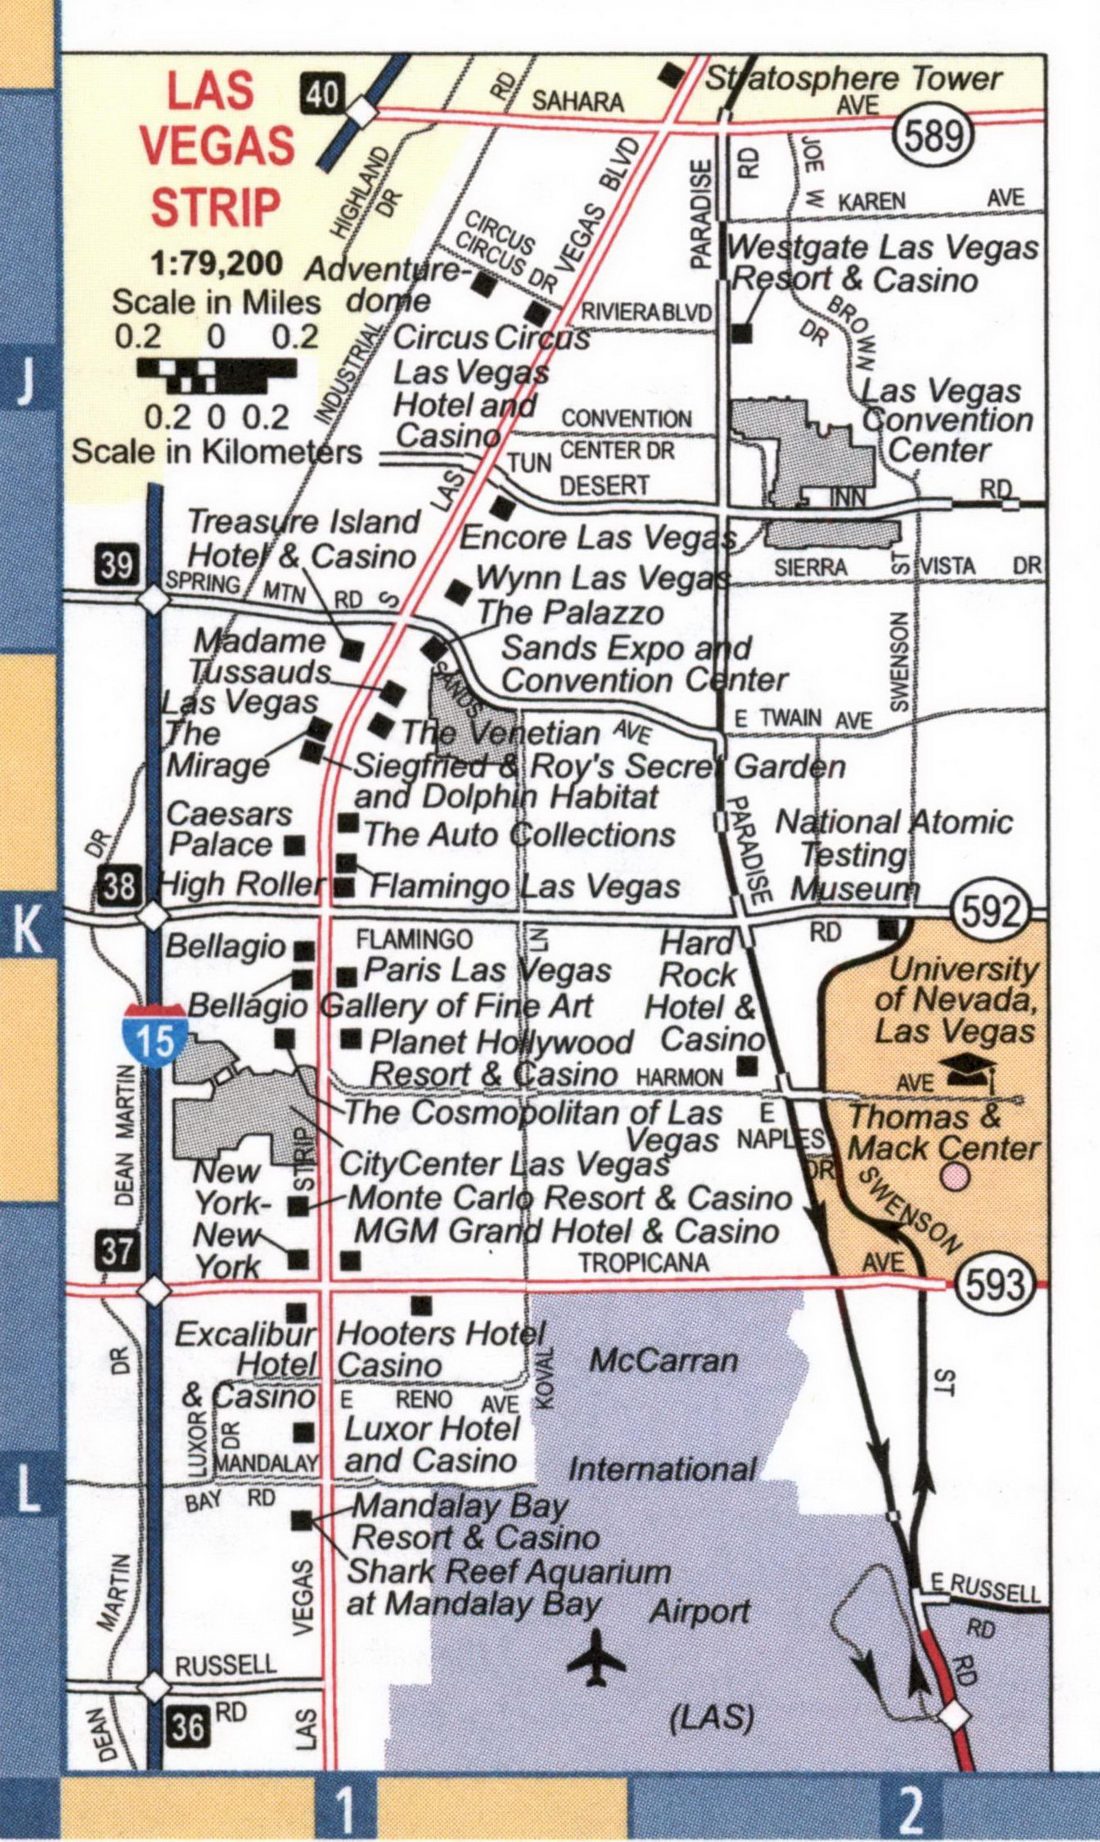 Map of Las Vegas Strip